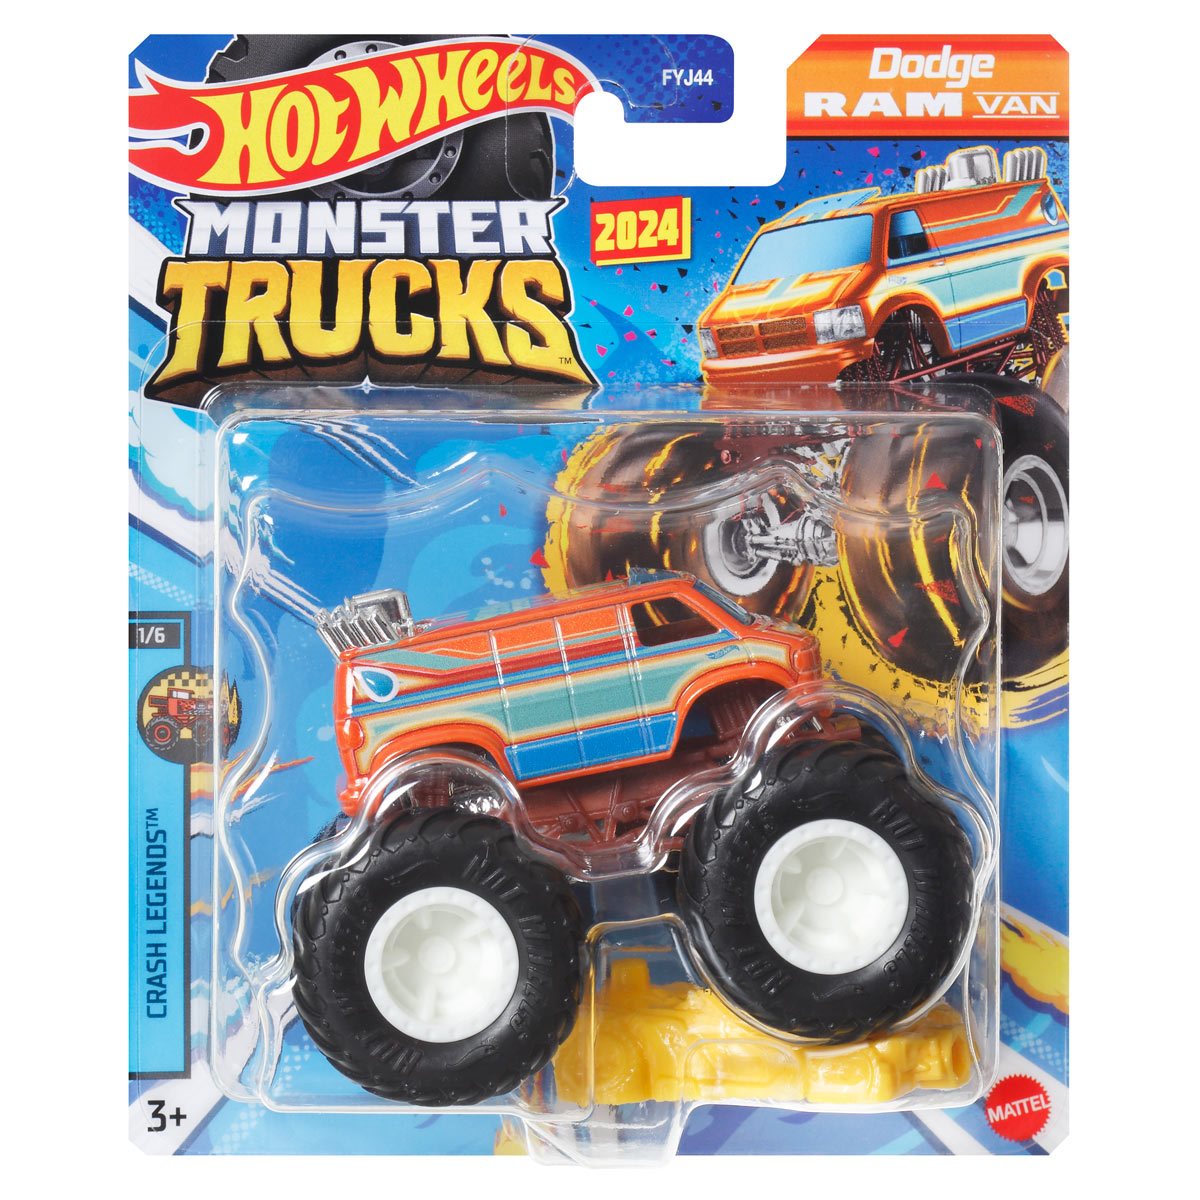 Hot Wheels Monster Truck Mega Wrex 2023 Live 5/8